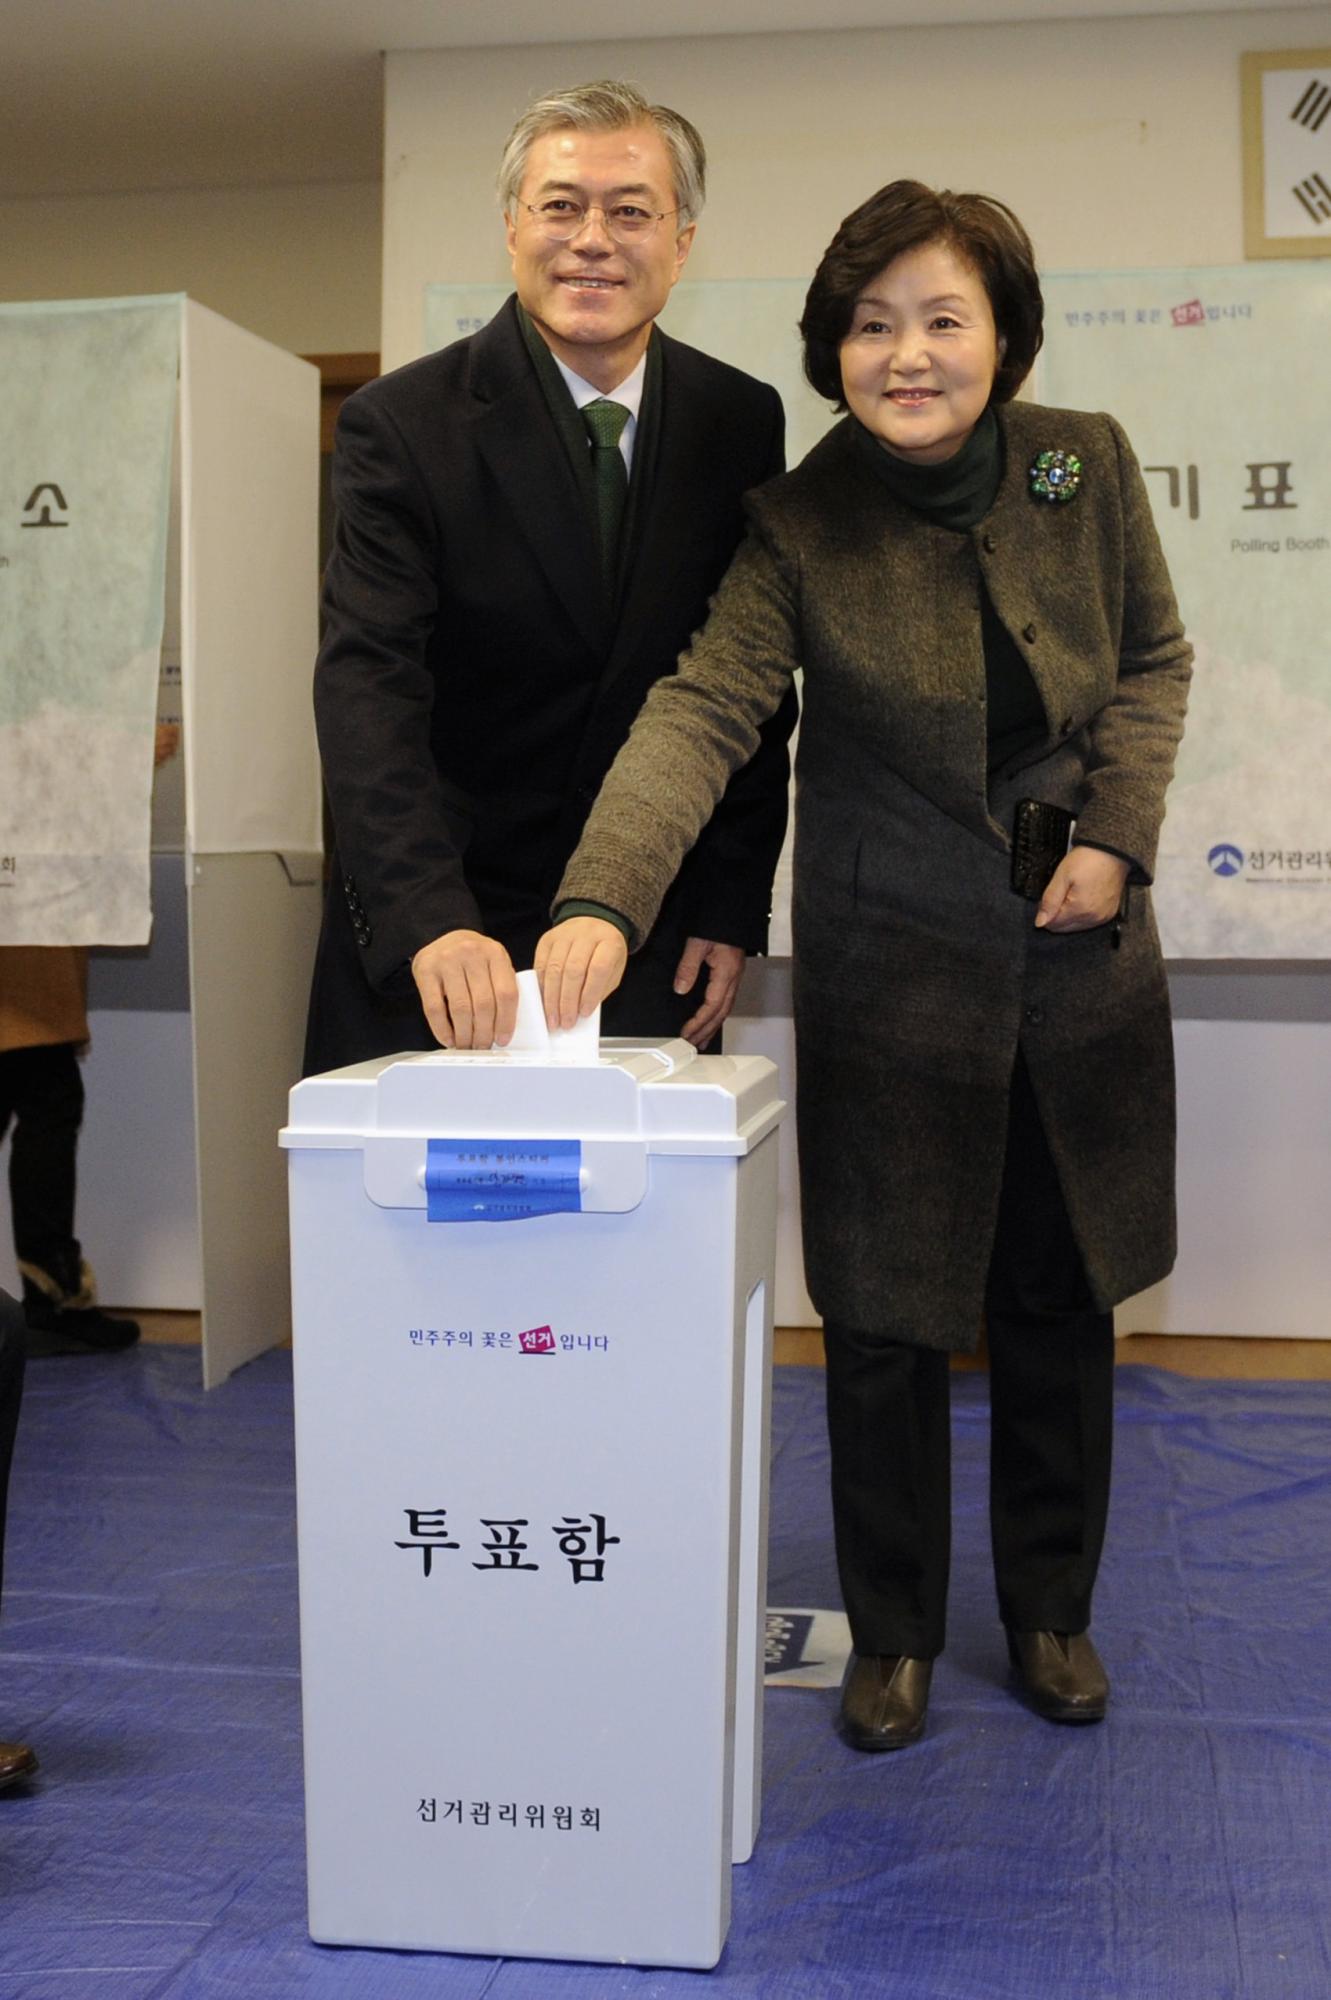 “冰公主”朴槿惠赢得大选 李明博电贺韩国首位女总统